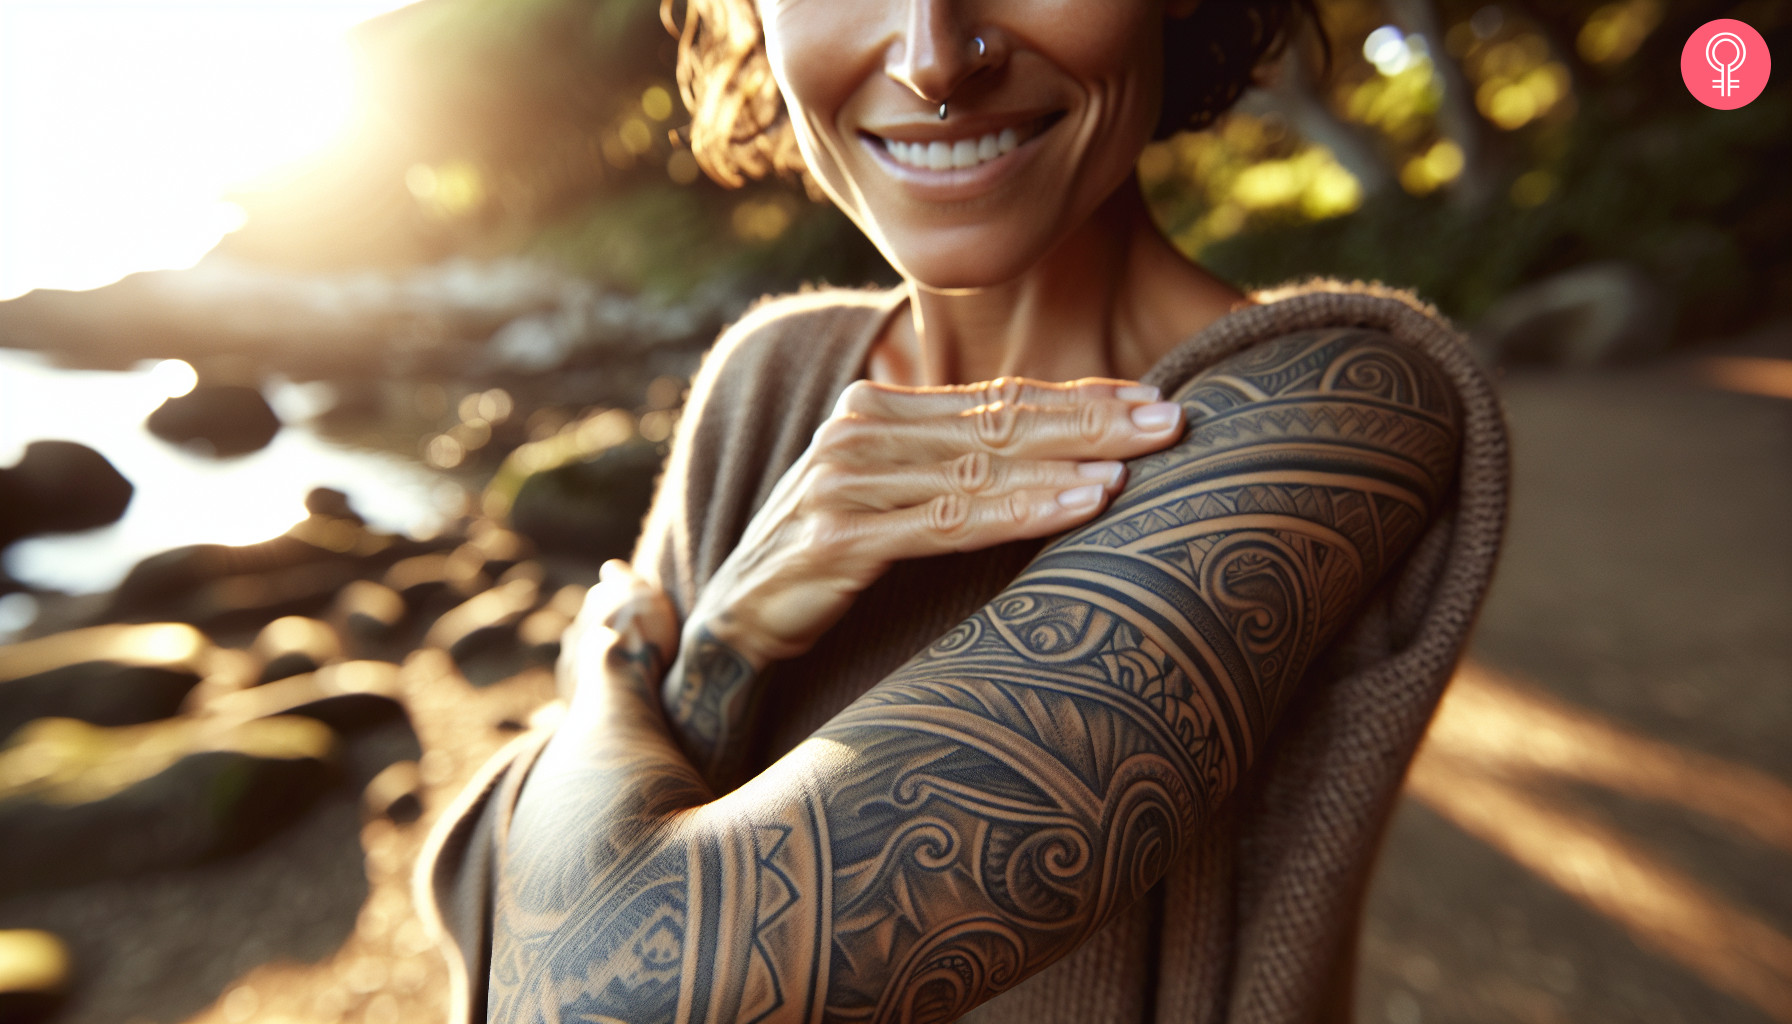 Spirals maori sleeve tattoo on a woman